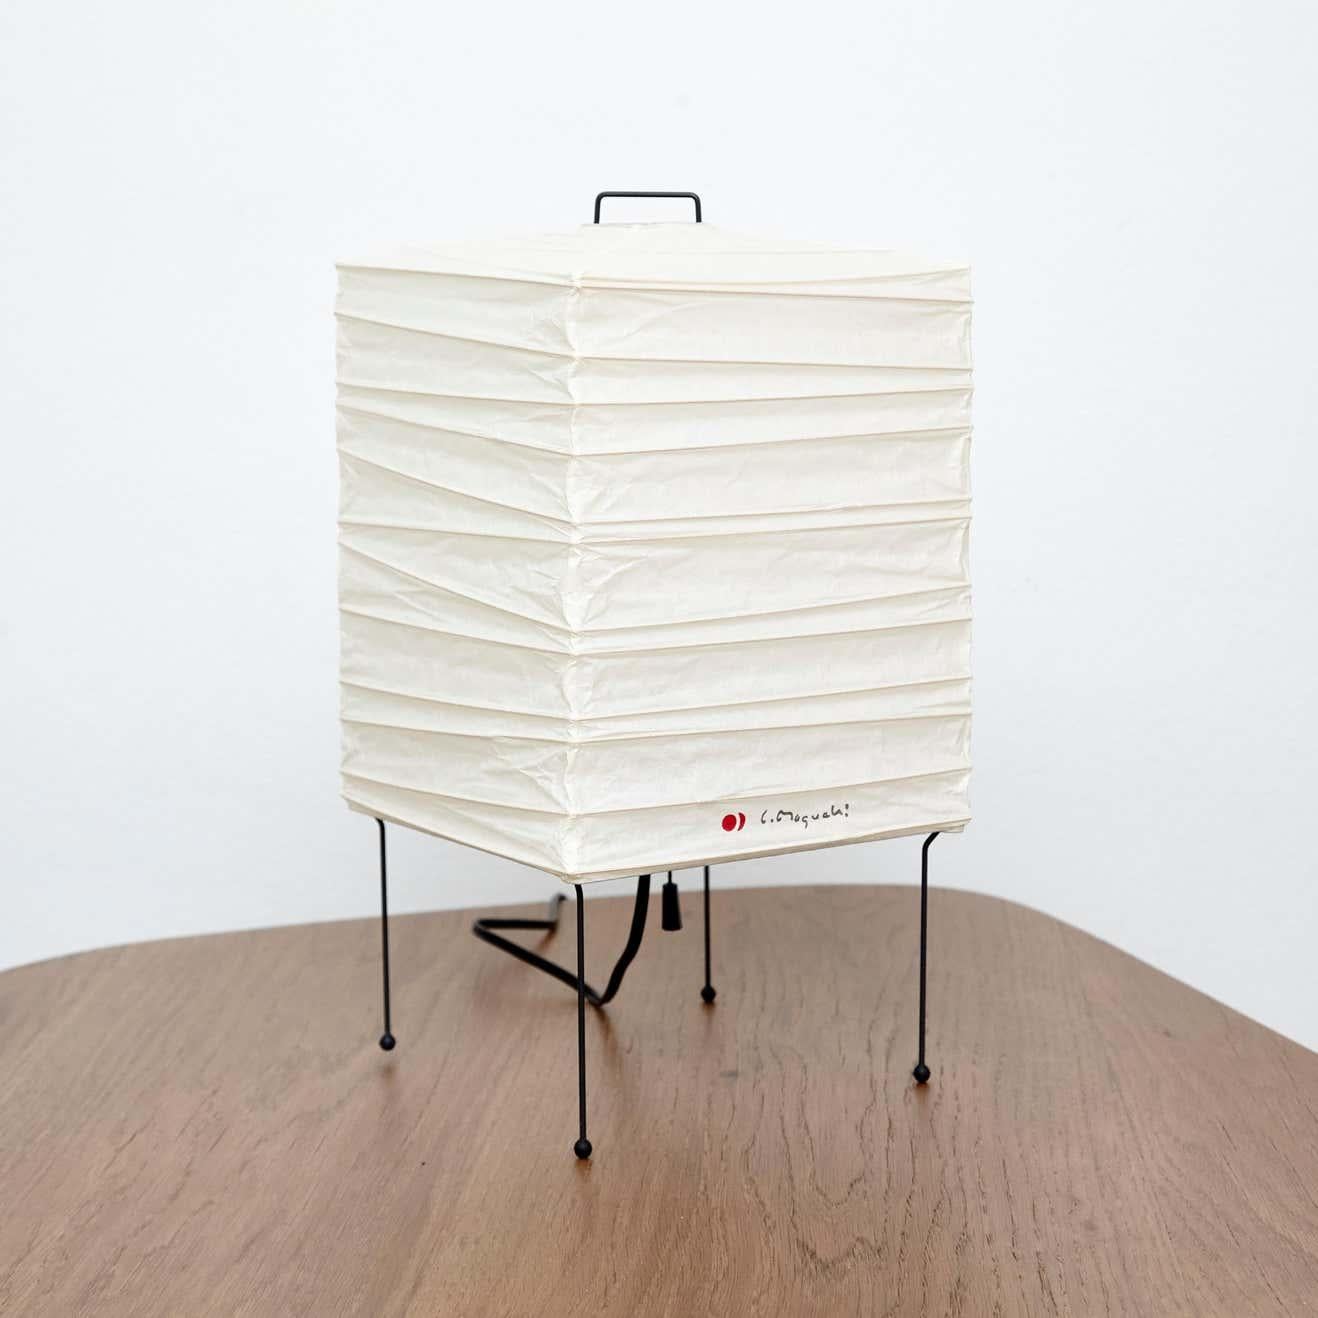 Lampe de table, modèle 1X, conçue par Isamu Noguchi.
Fabriqué par Ozeki & Company Ltd. (Japon.)
Structure à nervures en bambou recouverte de papier washi fabriqué selon les procédures traditionnelles.

En bon état vintage.

Édition signée avec